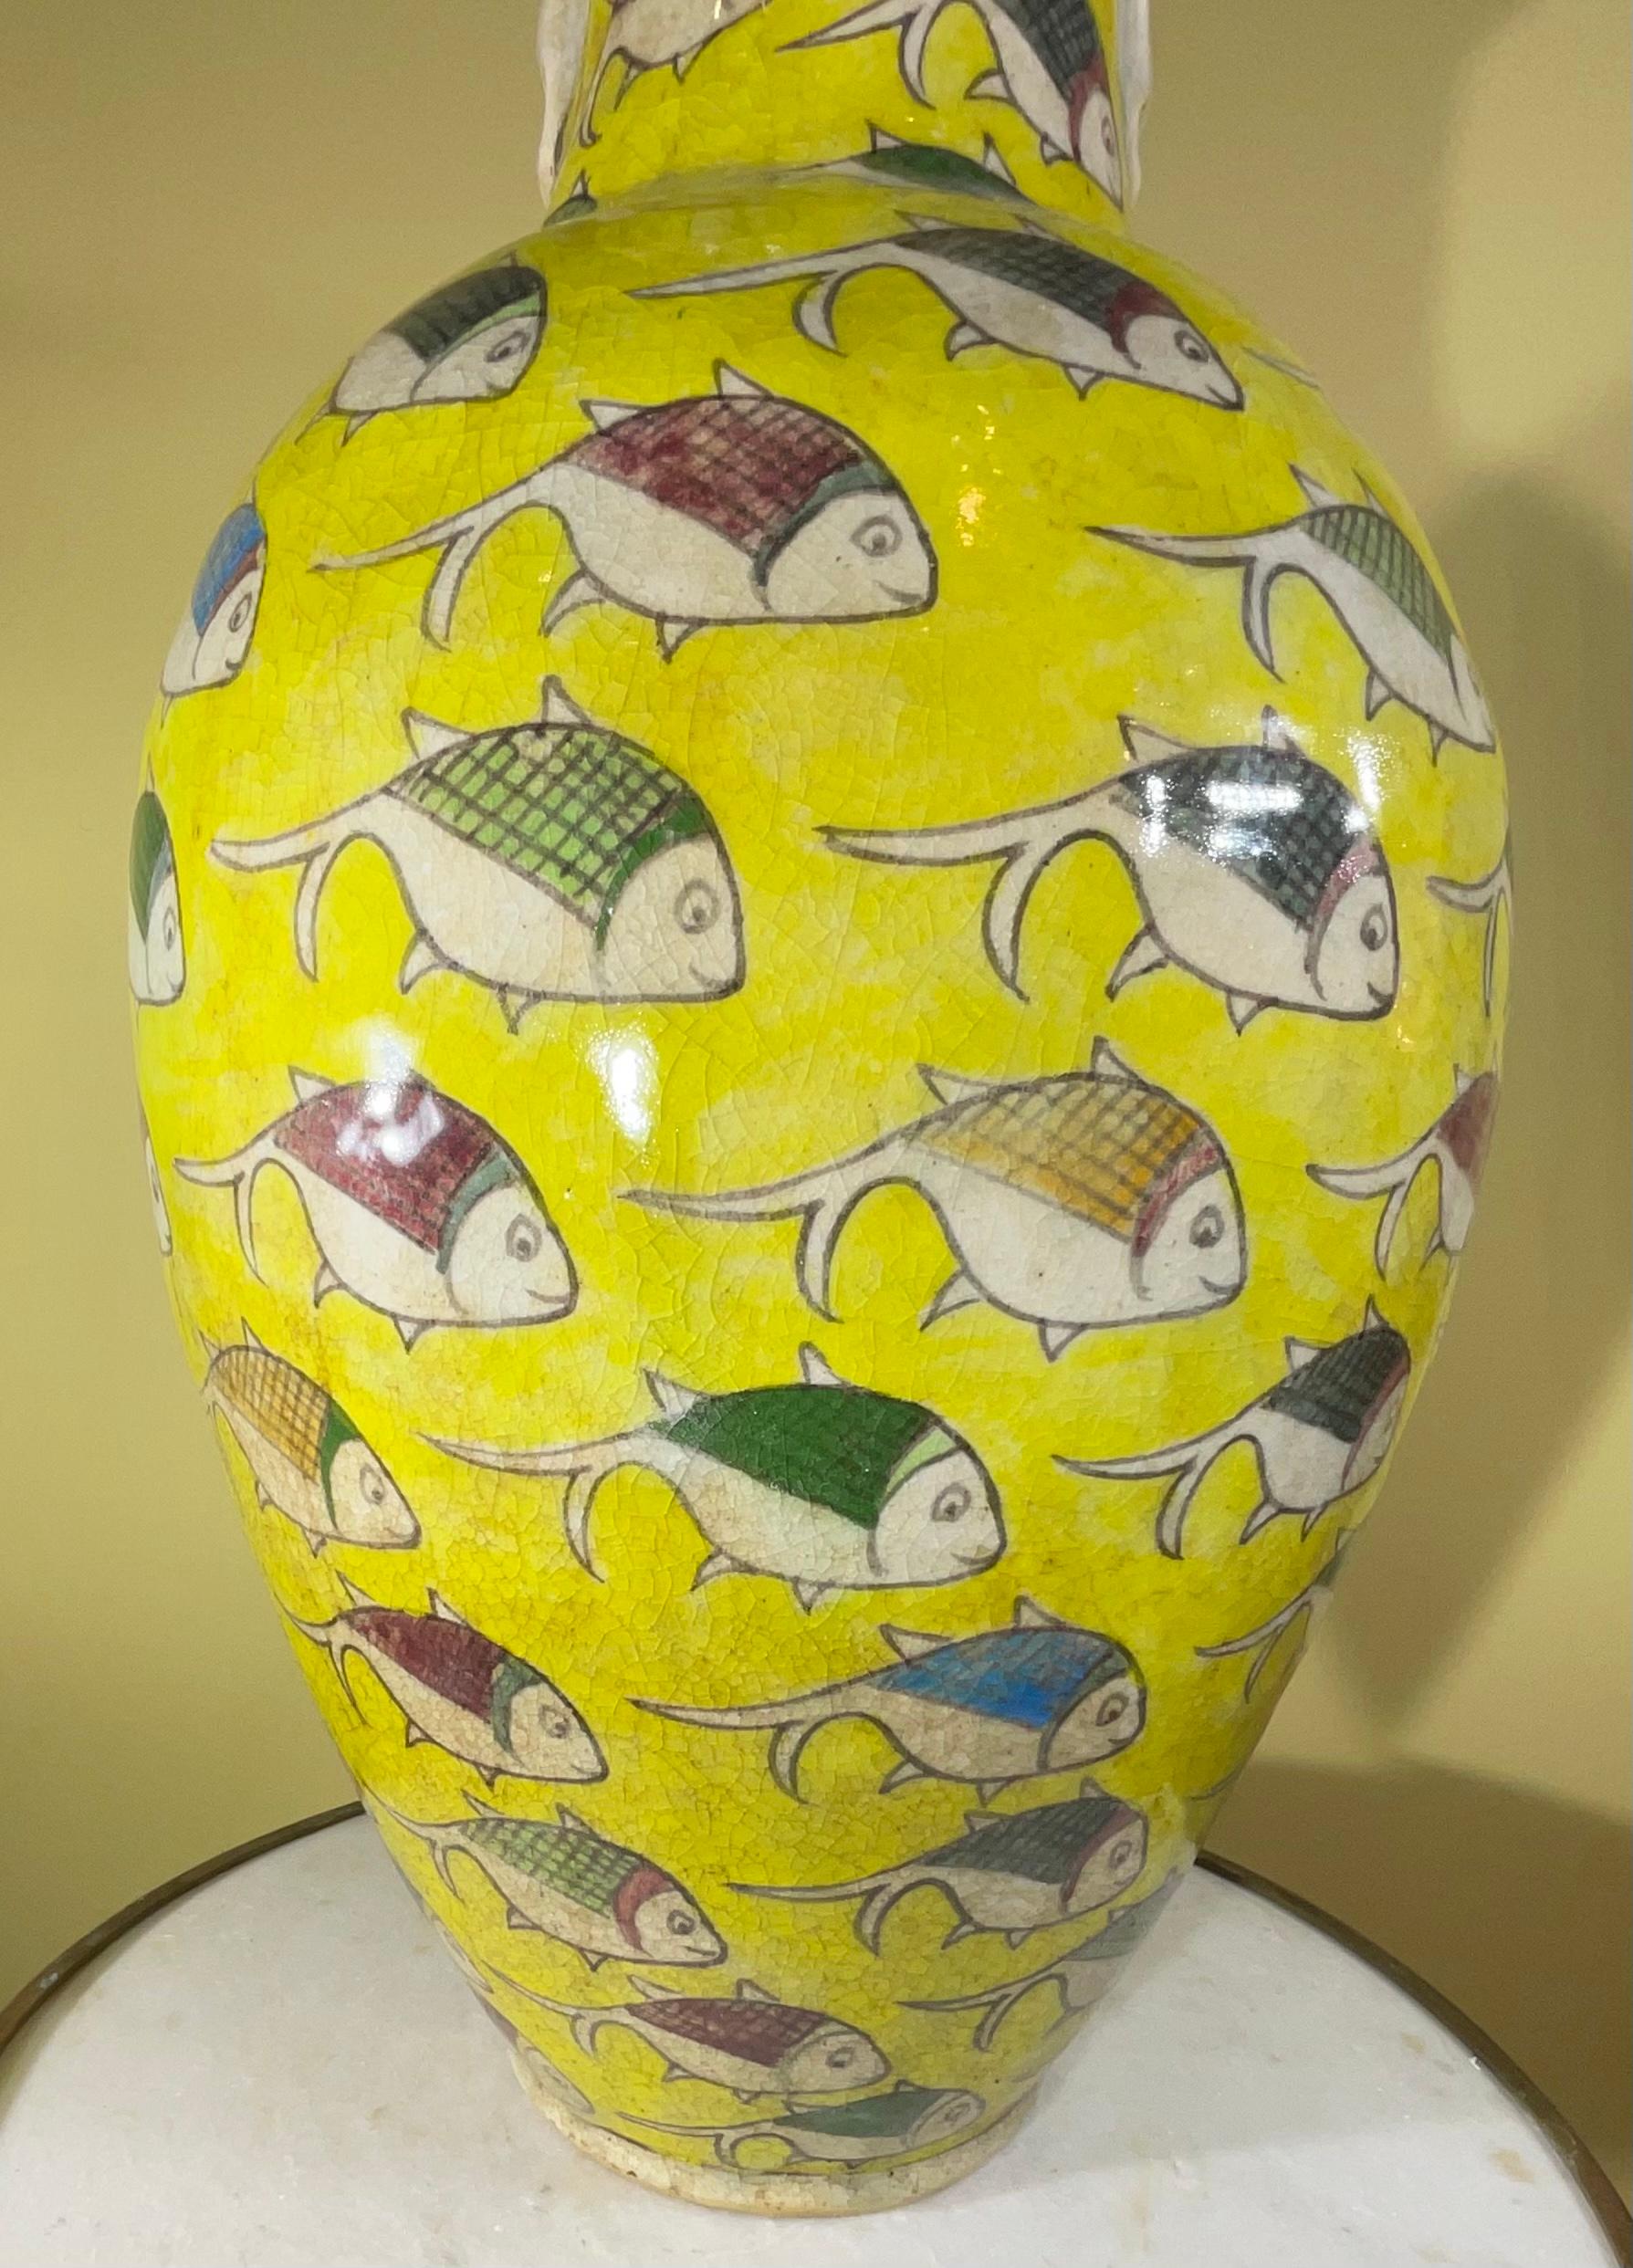 Magnifique vase en céramique persane peint et émaillé à la main avec un motif de poisson coloré sur fond jaune.
 Un grand objet d'art à exposer.